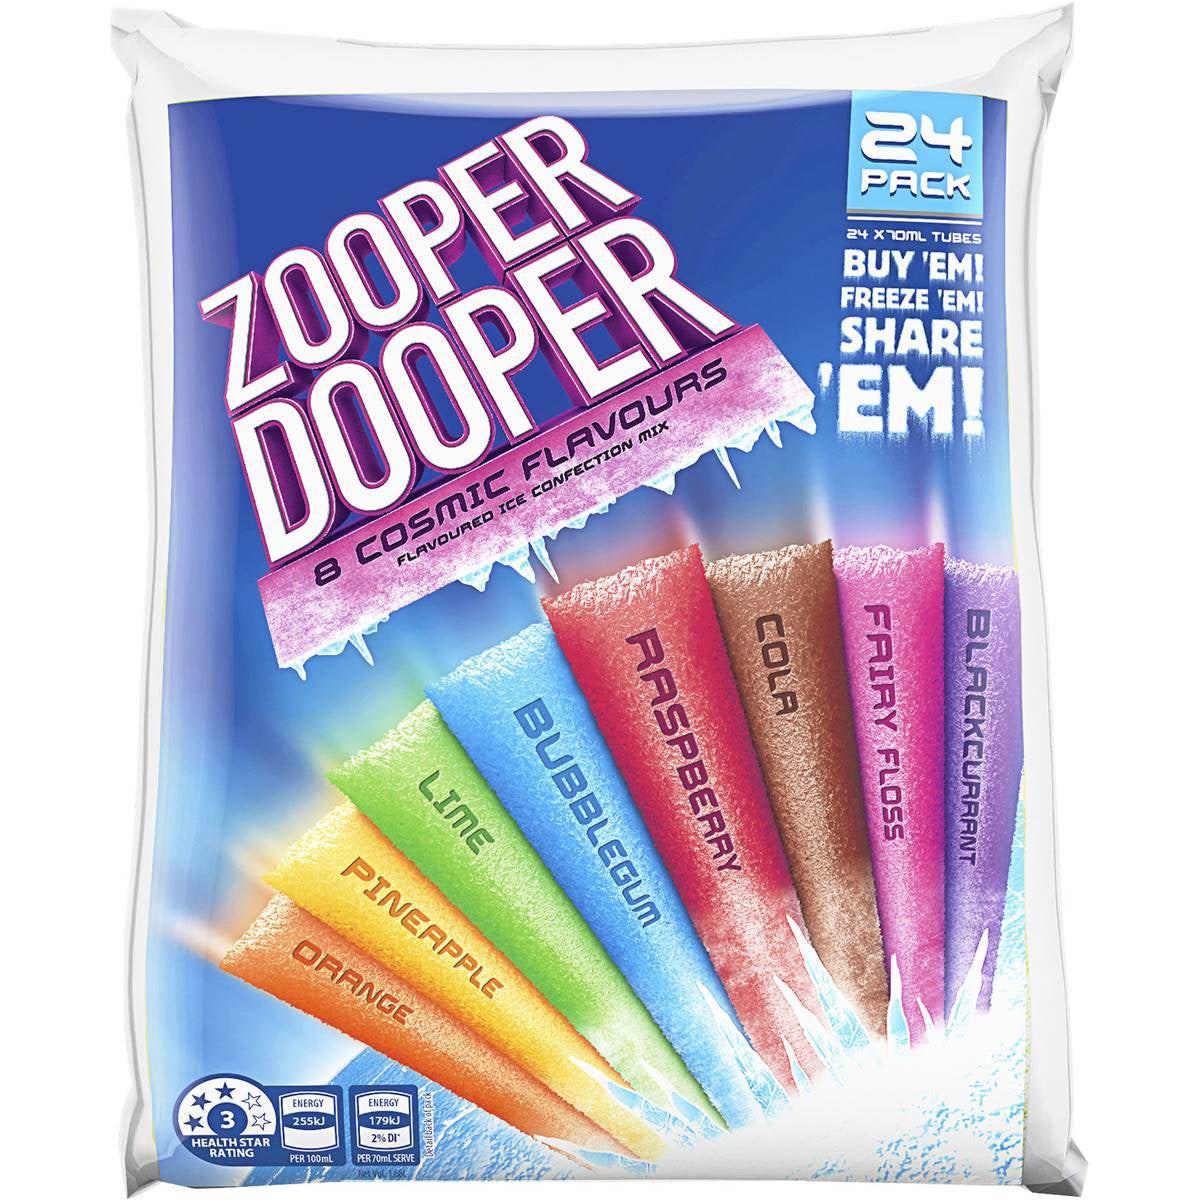 Zooper Dooper 8 Cosmic Flavours 24Pk